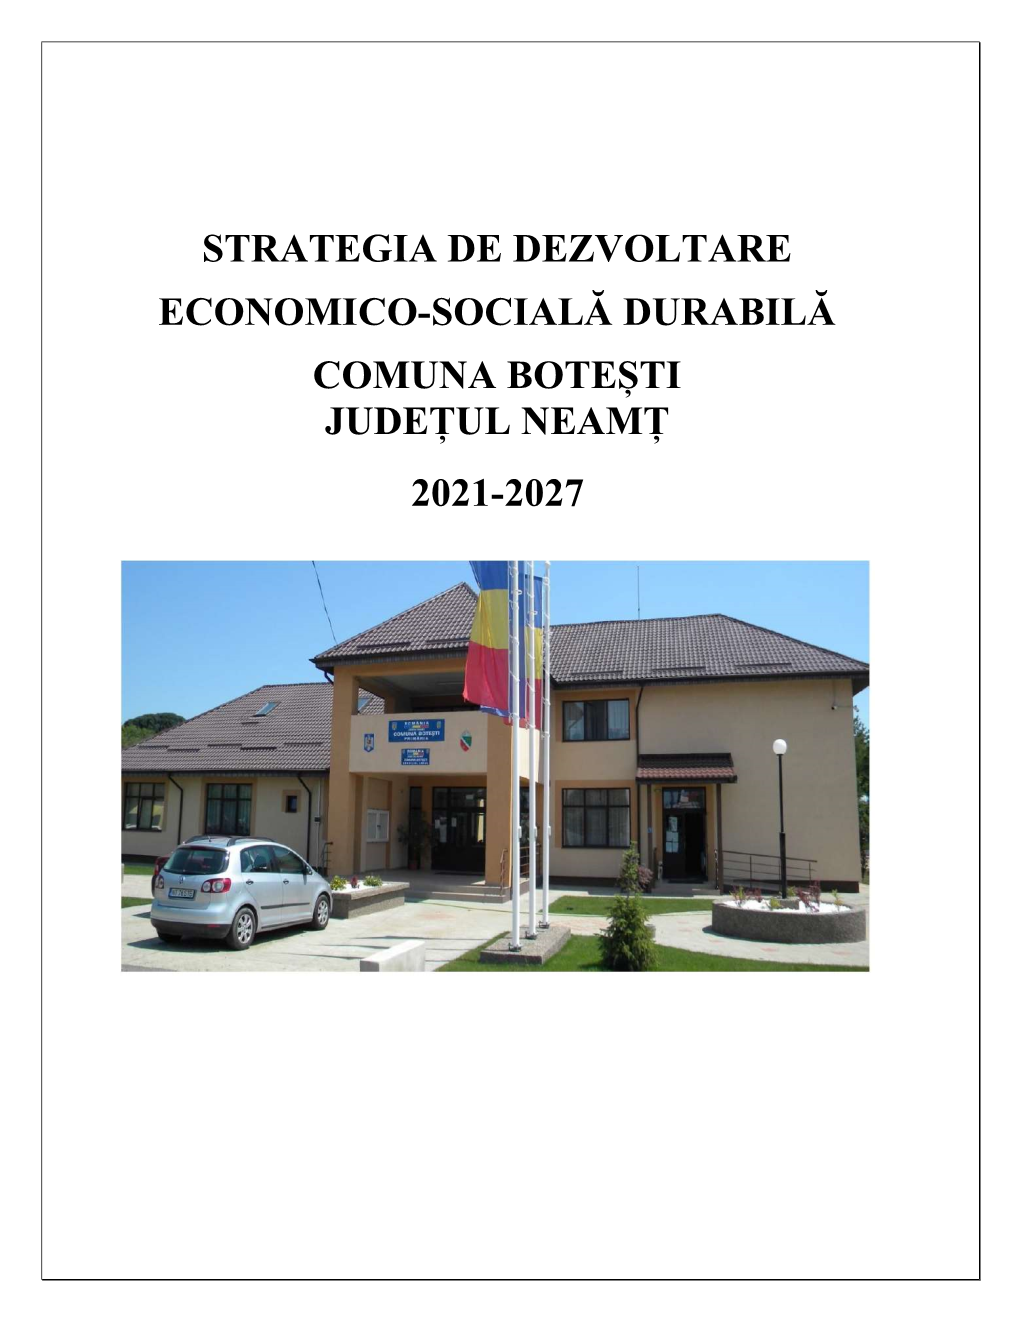 Strategia De Dezvoltare Economico-Socială Durabilă 2021-2027